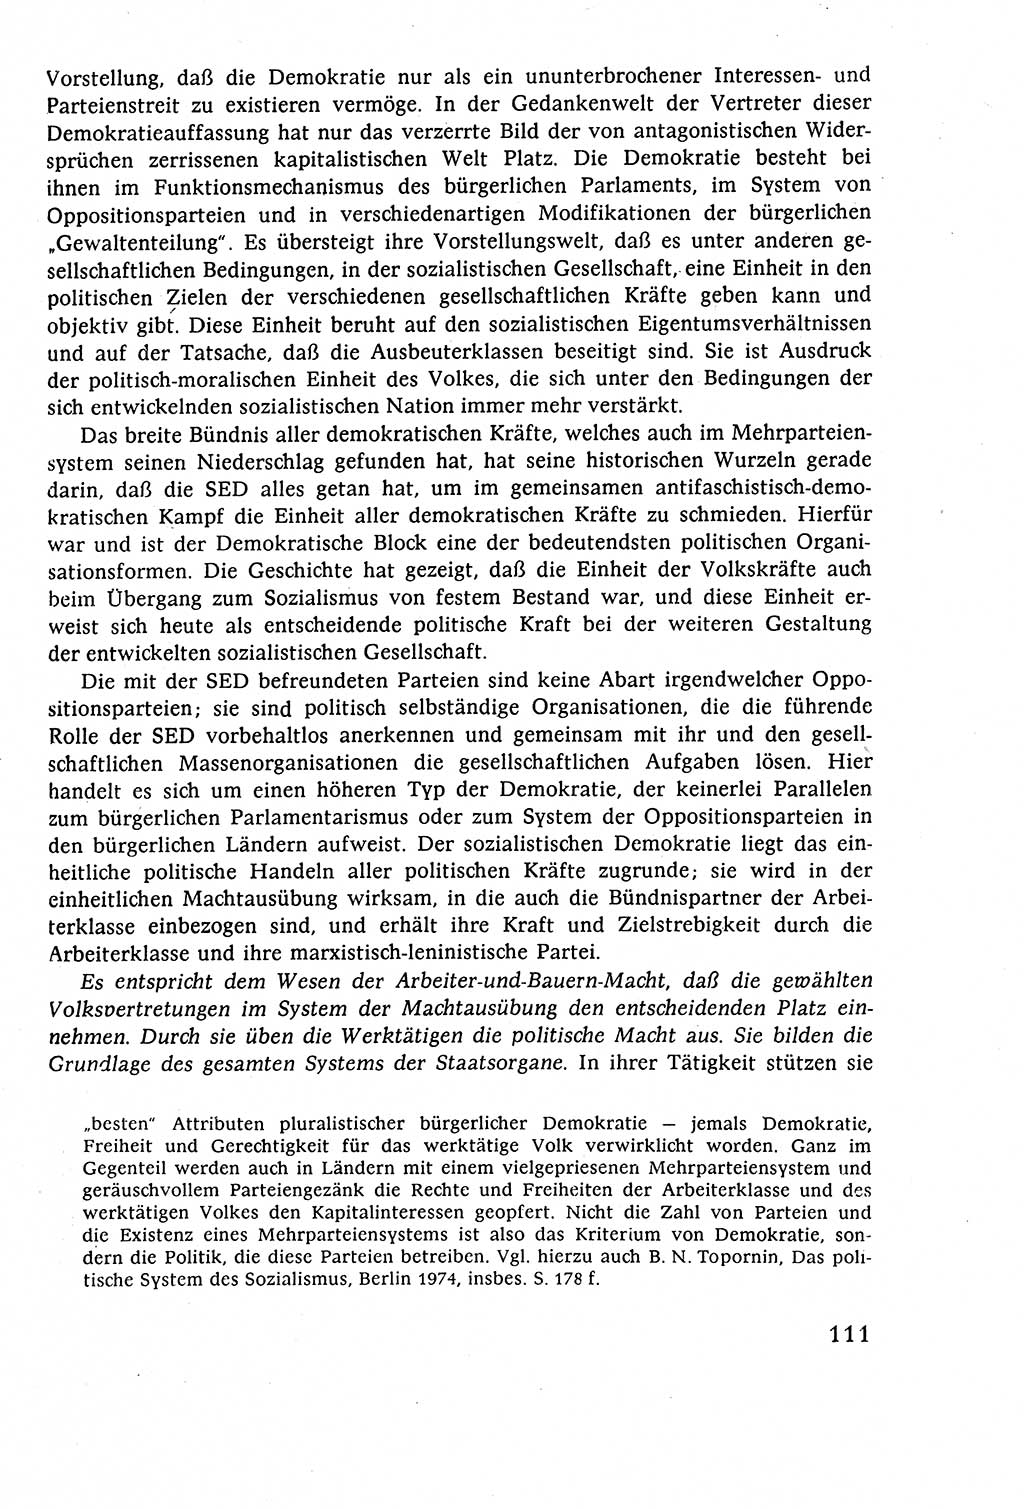 Staatsrecht der DDR (Deutsche Demokratische Republik), Lehrbuch 1977, Seite 111 (St.-R. DDR Lb. 1977, S. 111)